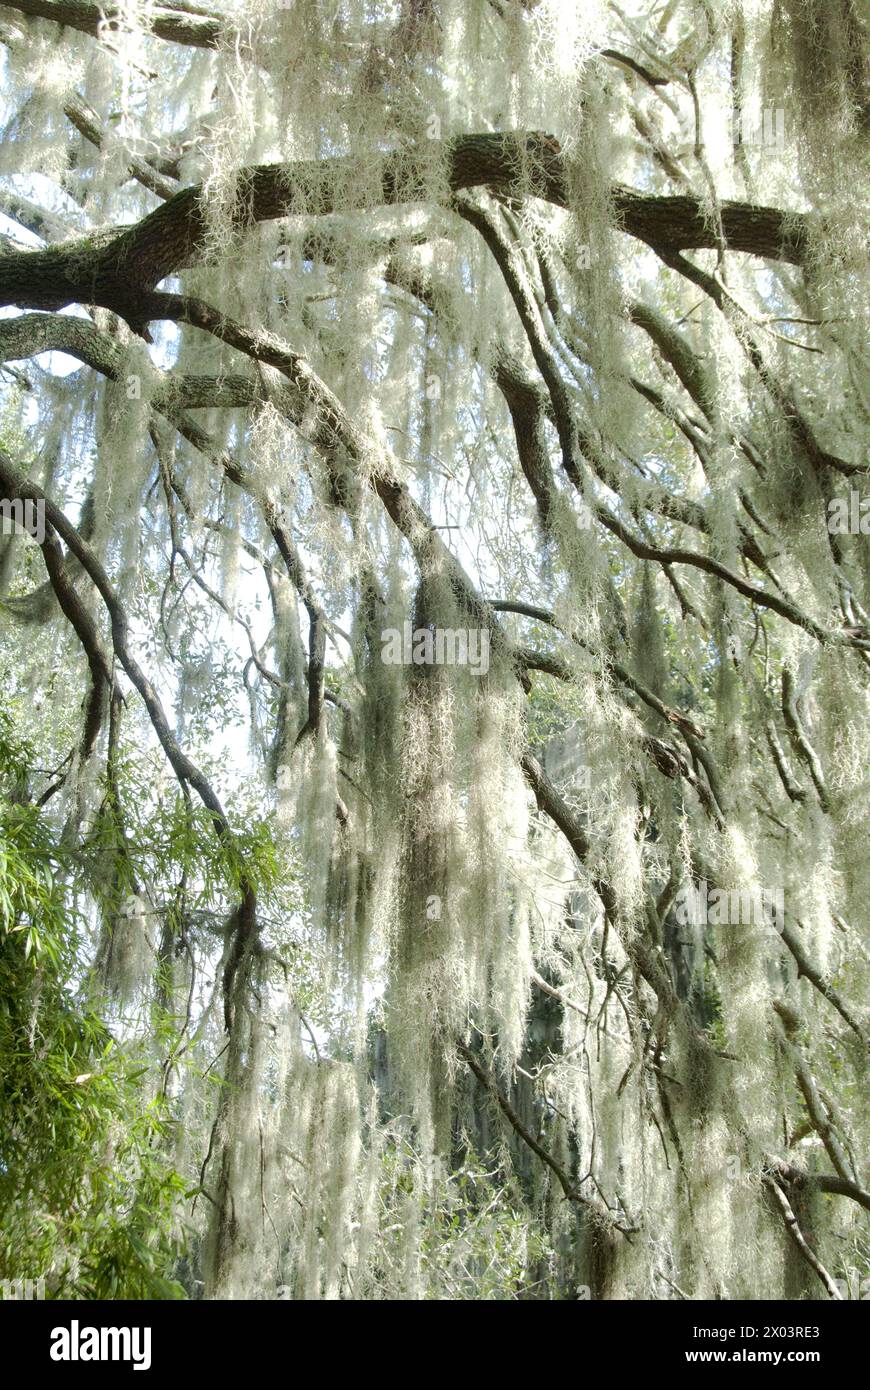 Muschio spagnolo (Tillandsia usneoides) che cresce su grandi alberi - Gainesville, Florida, USA Foto Stock